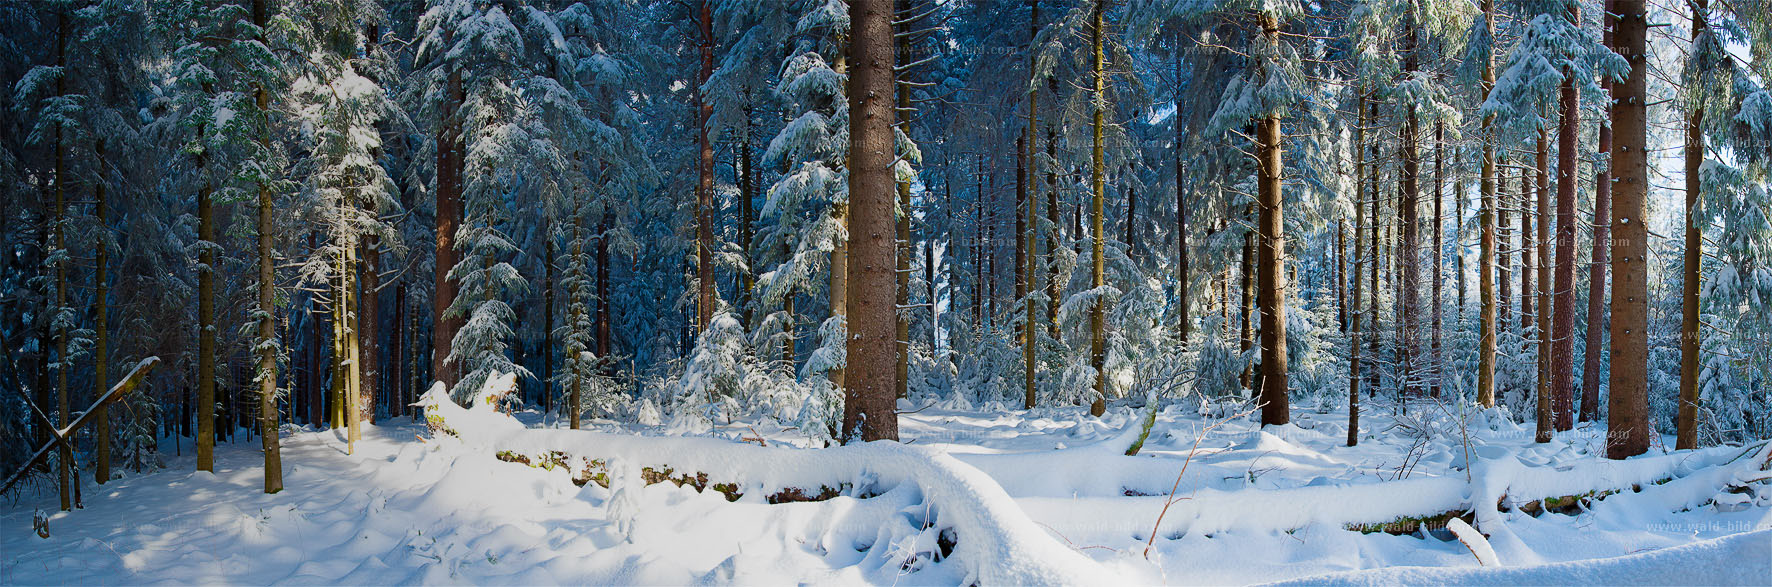 Foto Winterwald groß hochauflösend